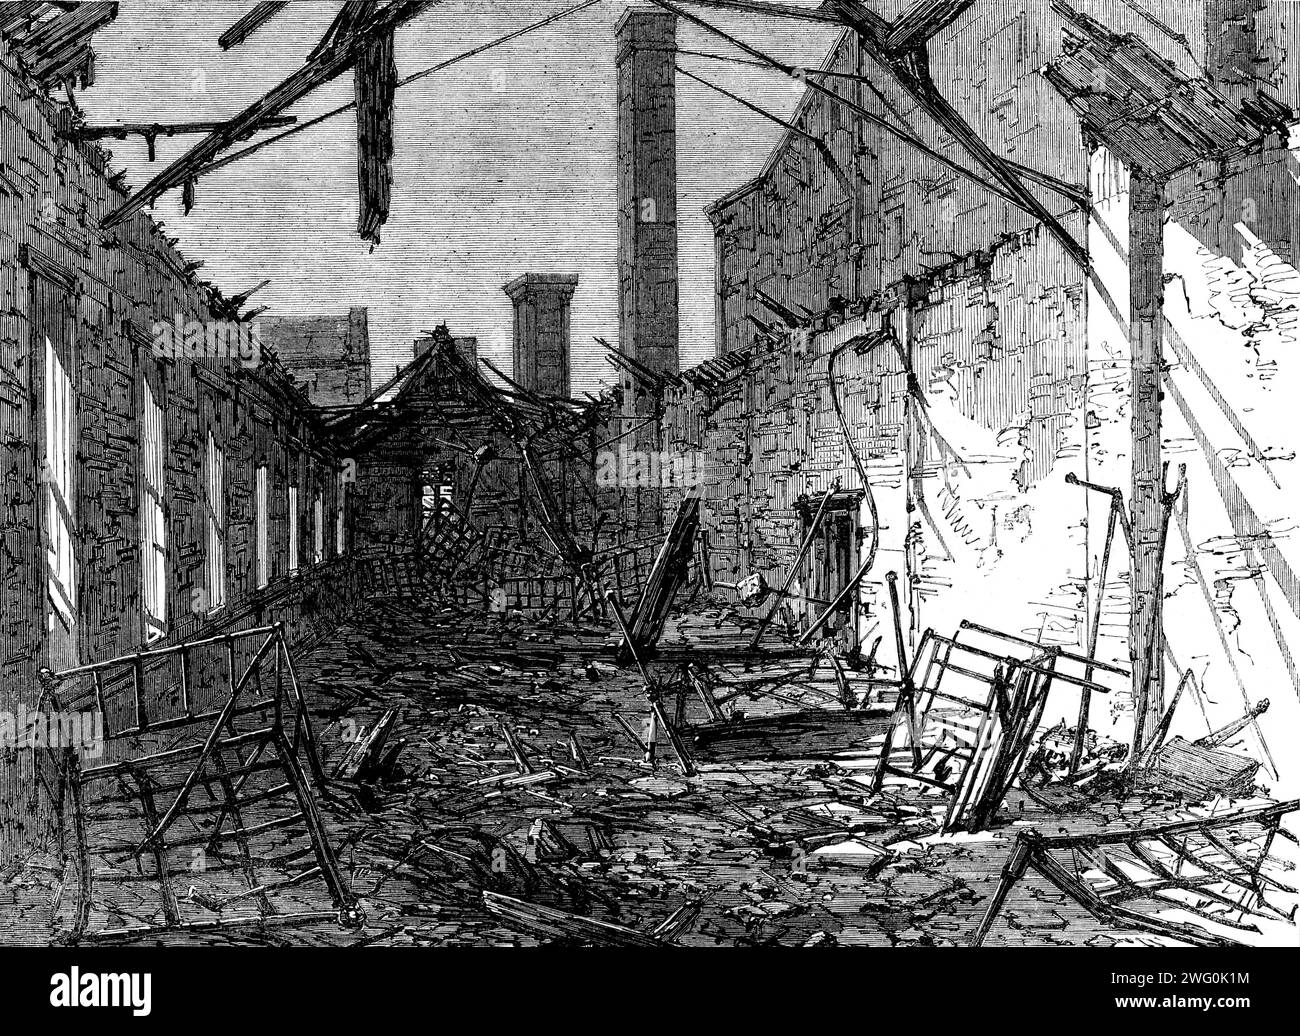 L'incendio fatale al Liverpool Workhouse, Brownlow-Hill: Rovine del dormitorio dei bambini, 1862. "...un incendio più calamitoso... ha causato la perdita della vita di due donne e ventuno bambini... i maggiori sforzi sono stati fatti per estirpare i bambini attraverso le finestre... tuttavia, il fumo era così denso e il calore così grande che era assolutamente impossibile per chiunque ottenere un ingresso senza la certezza di una morte quasi istantanea ... due infermiere adulte e una ragazza caddero vittime dei loro sforzi per salvare la vita dei bambini indifesi ... sulla sottomissione di il fuoco che le rovine presentavano Foto Stock